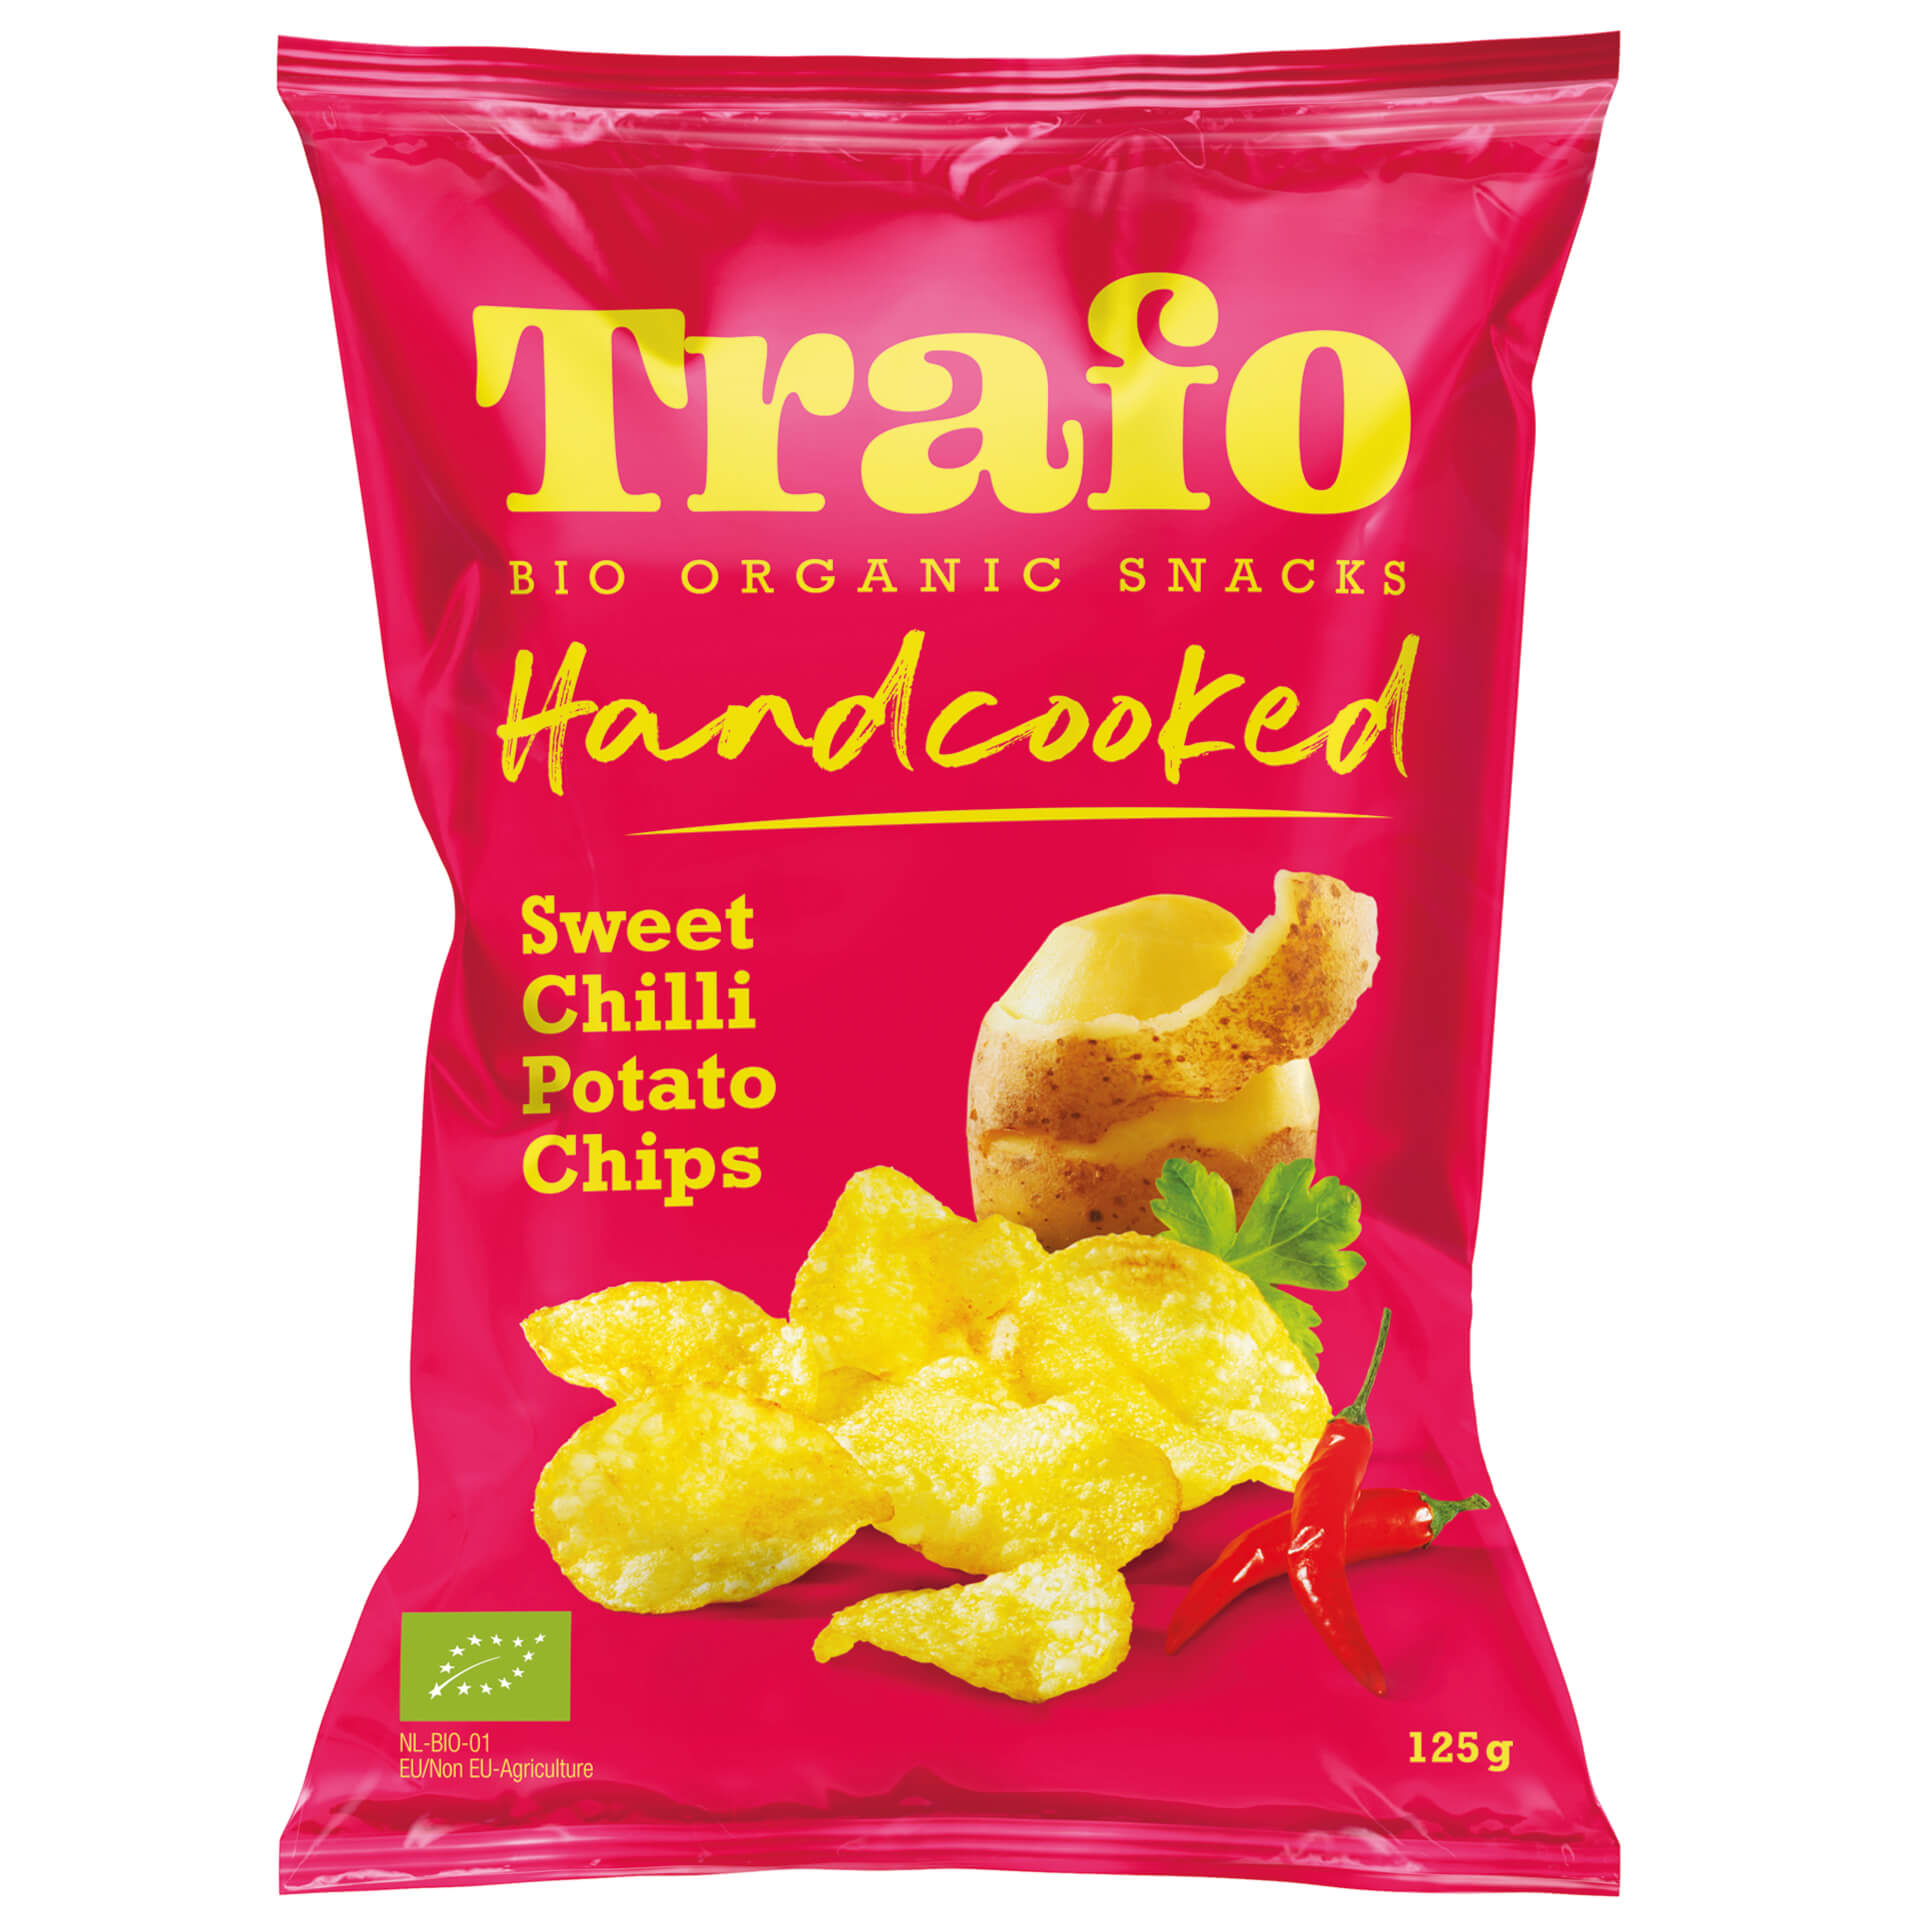 Trafo Handcooked chips sweet chili bio 125g